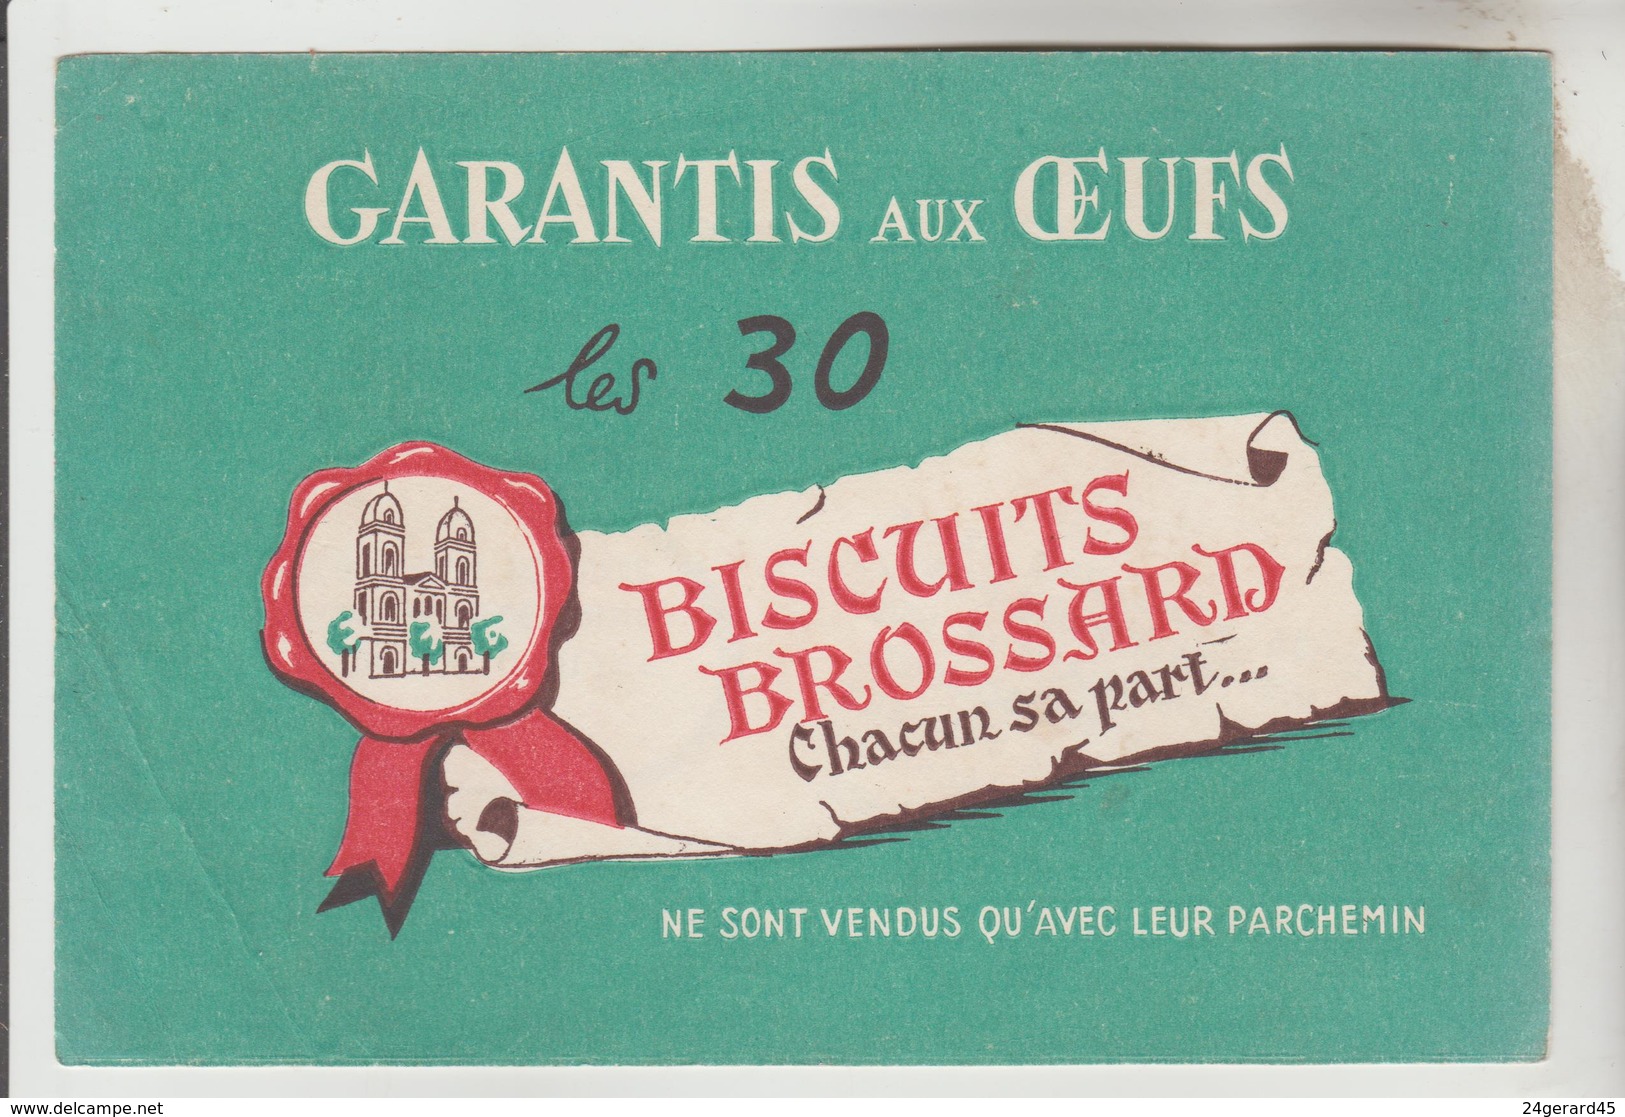 2 BUVARDS GATEAUX PAIN D'EPICES - Pain D'Epices BROCHET Frères, Biscuits BROSSARD St Jean D'Angély Charente Maritime - Mosterd